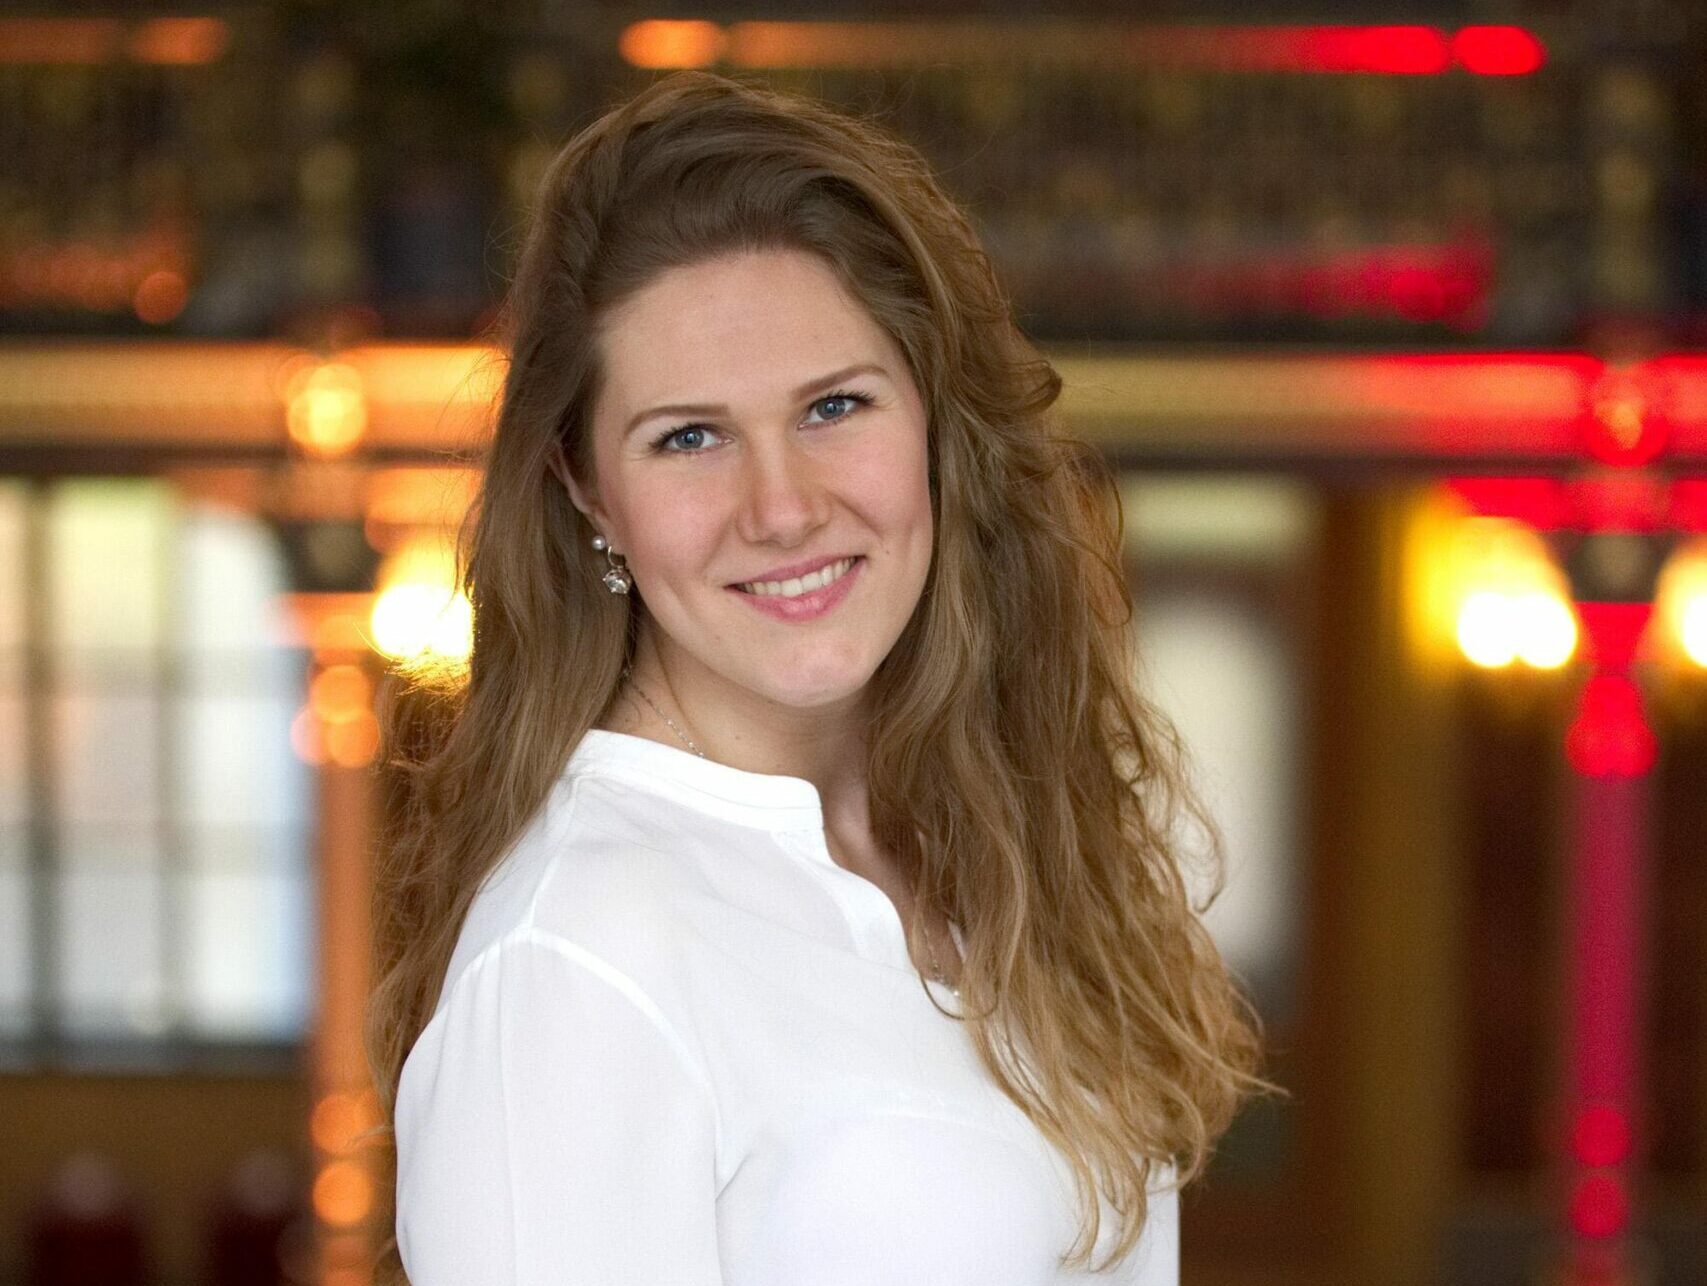 LMN-Sopranistin Susanne Kapfer gewinnt beim Wettbewerb um den Kulturkreis Gasteig Musikpreis 2021